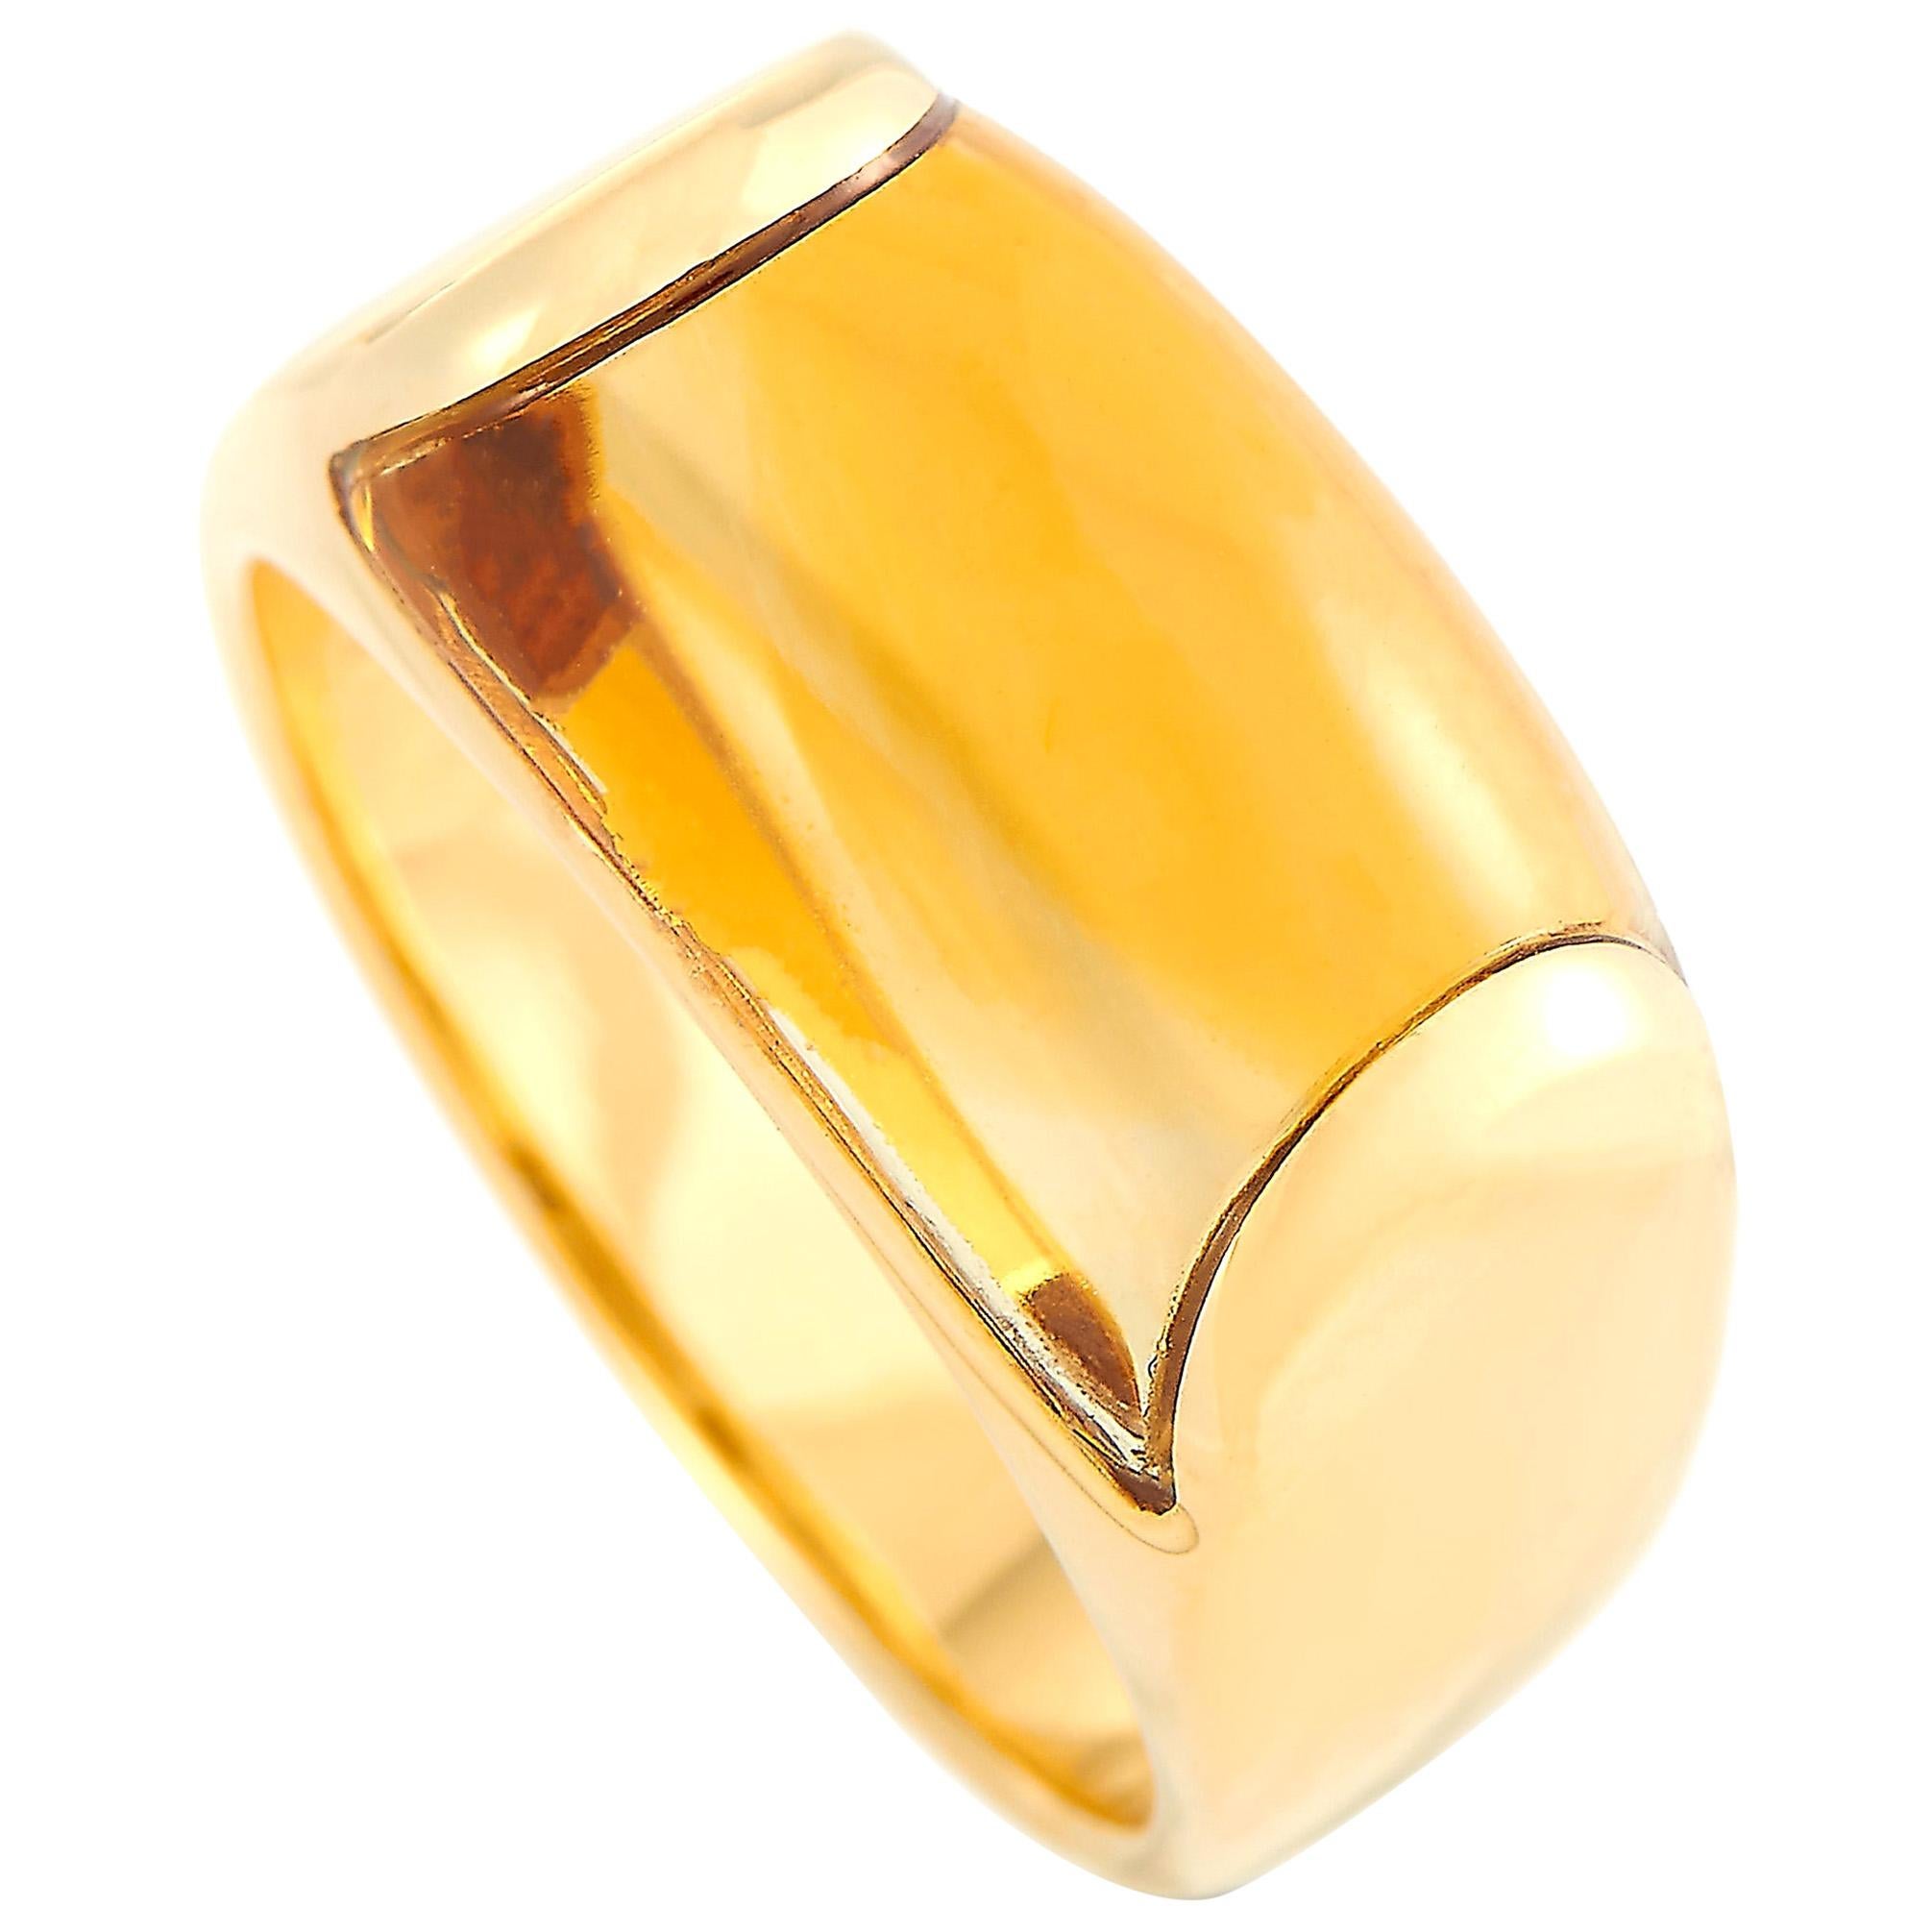 Bvlgari Tronchetto 18 Karat Yellow Gold Citrine Ring